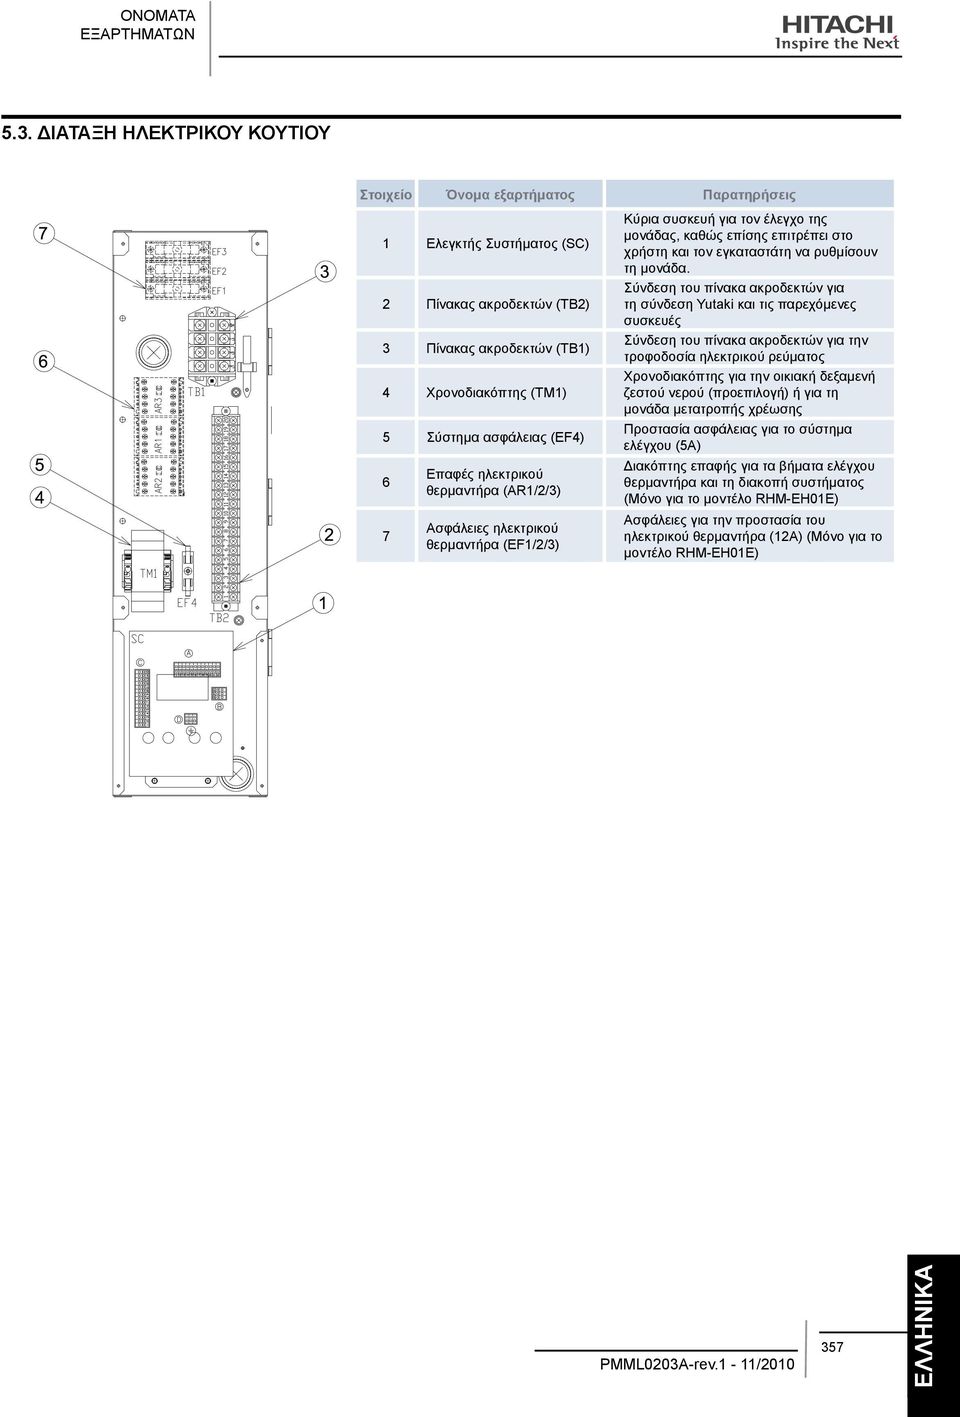 7 Επαφές ηλεκτρικού θερμαντήρα (AR1/2/3) Ασφάλειες ηλεκτρικού θερμαντήρα (EF1/2/3) Κύρια συσκευή για τον έλεγχο της μονάδας, καθώς επίσης επιτρέπει στο χρήστη και τον εγκαταστάτη να ρυθμίσουν τη